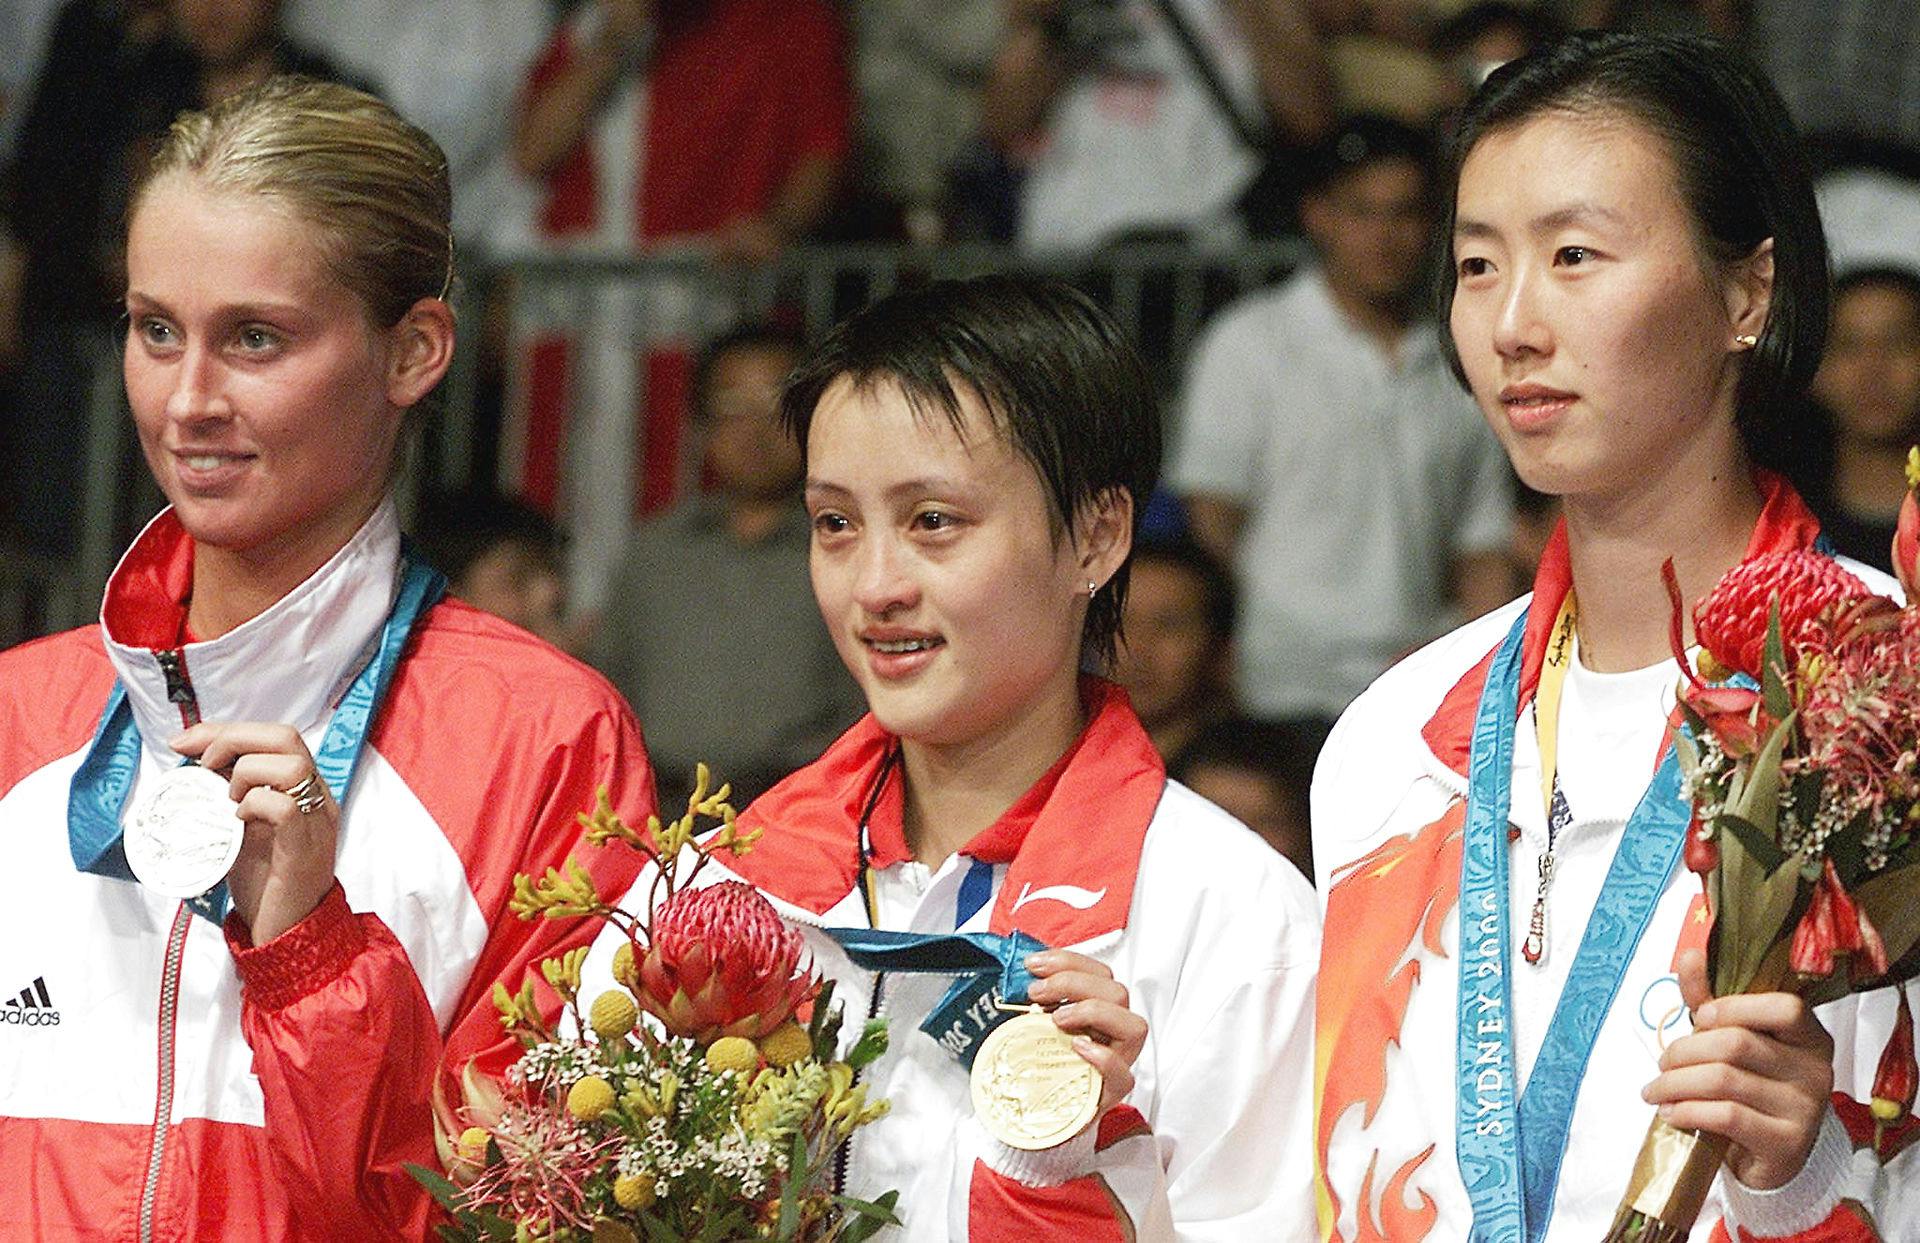 Ye Zhaoying (til højre) måtte nøjes med bronze ved OL i 2000. Hun hævder, at hun blev beordret til at tabe til Gong Zhichao i semifinalen, fordi kineserne mente, at Zhichao havde bedre muligheder i finalen mod Camilla Martin (til venstre).